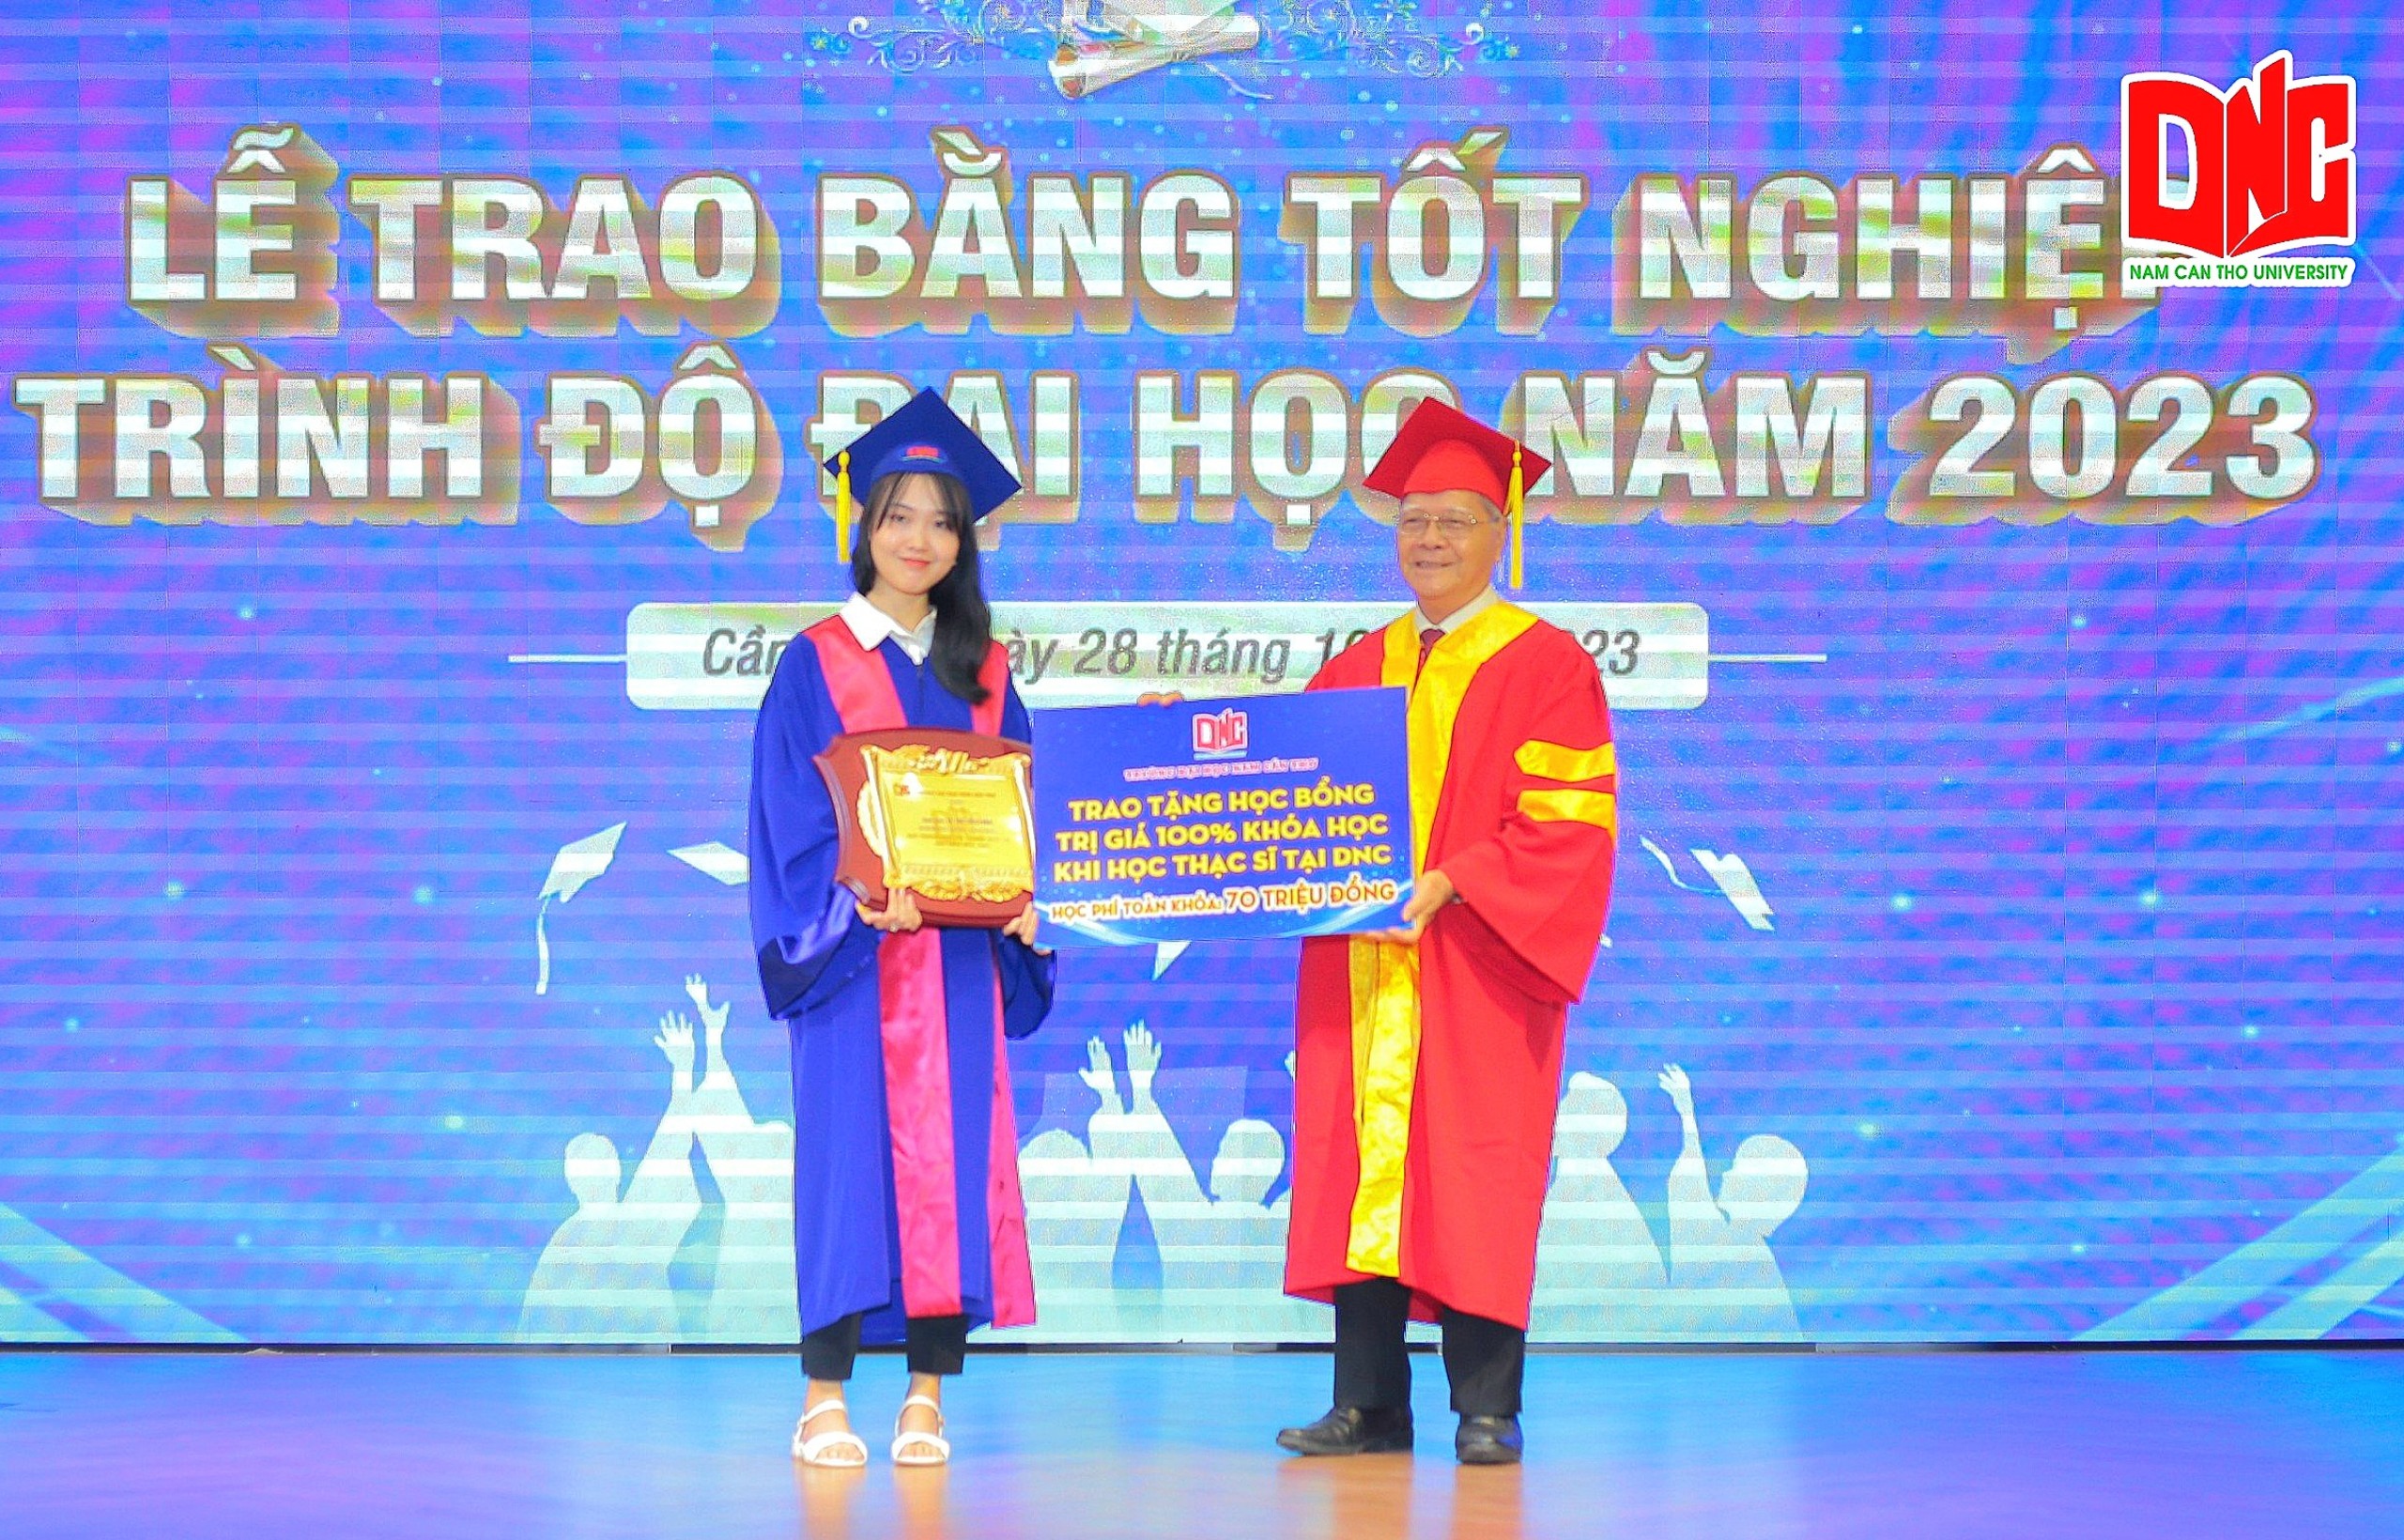 Tiến sĩ Nguyễn Văn Quang - Hiệu trưởng Trường Đại học Nam Cần Thơ trao tặng học bổng 100% khóa học Thạc sĩ tại DNC.